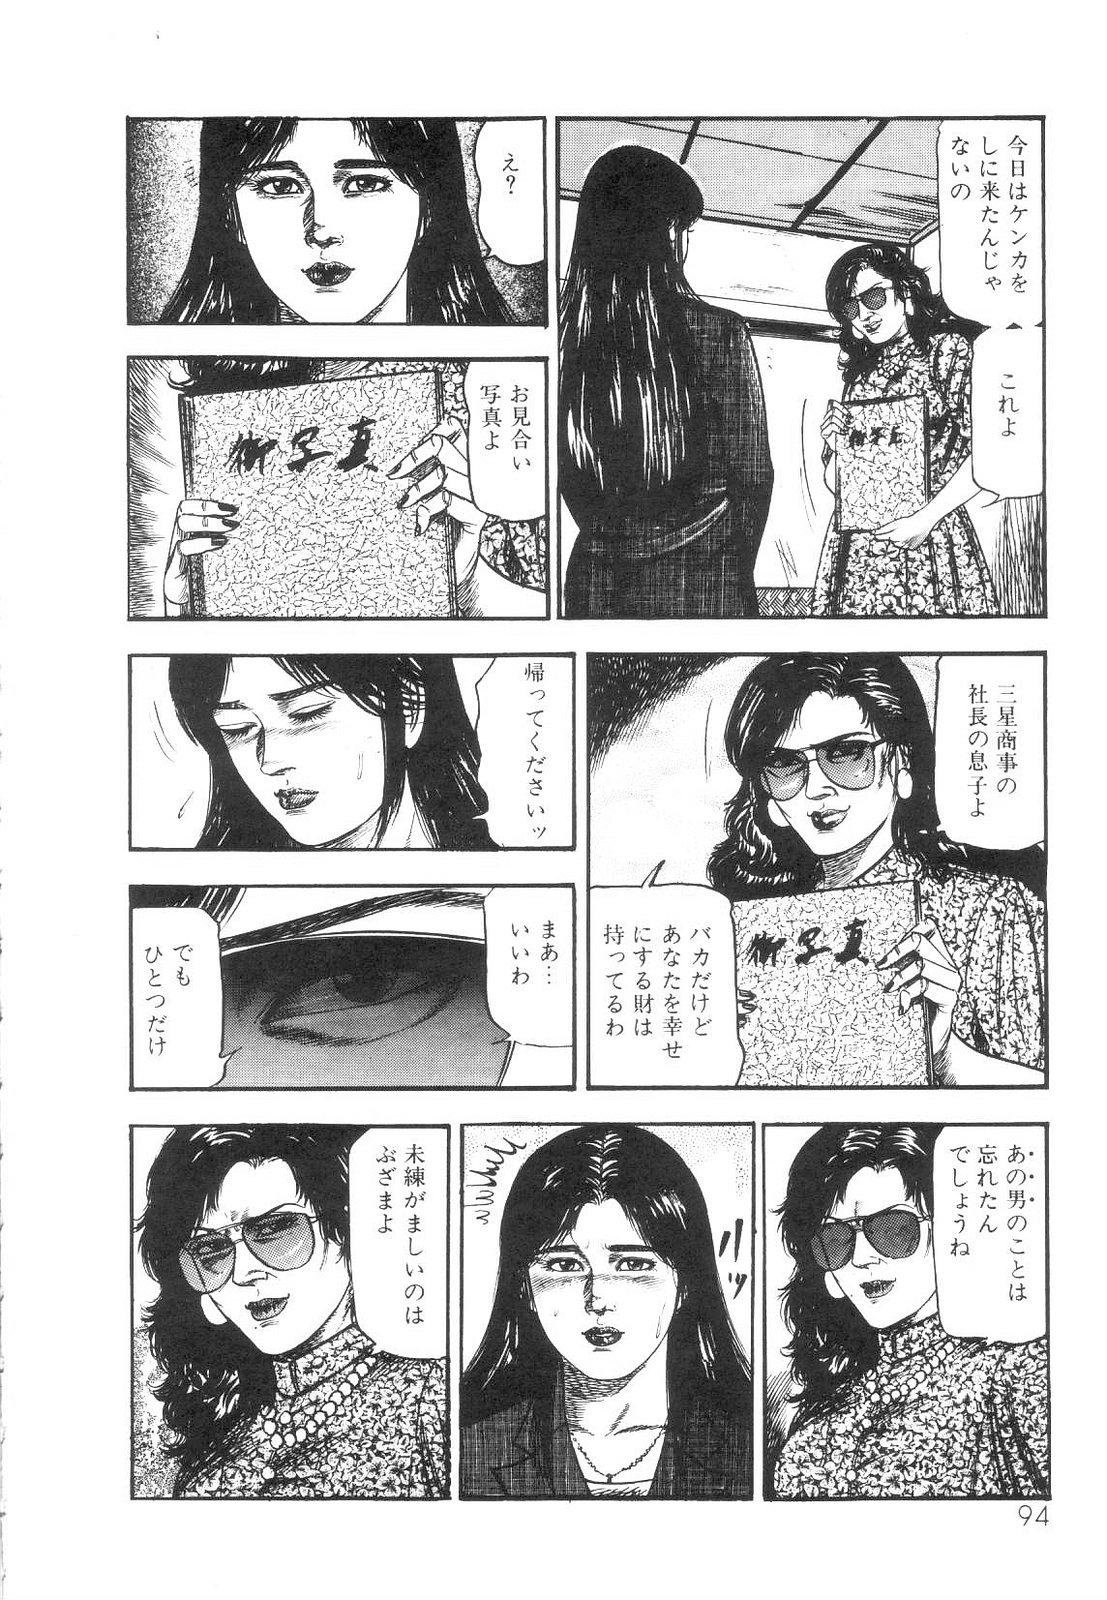 Shiro no Mokushiroku Vol. 1 - Sei Shojo Shion no Shou 95